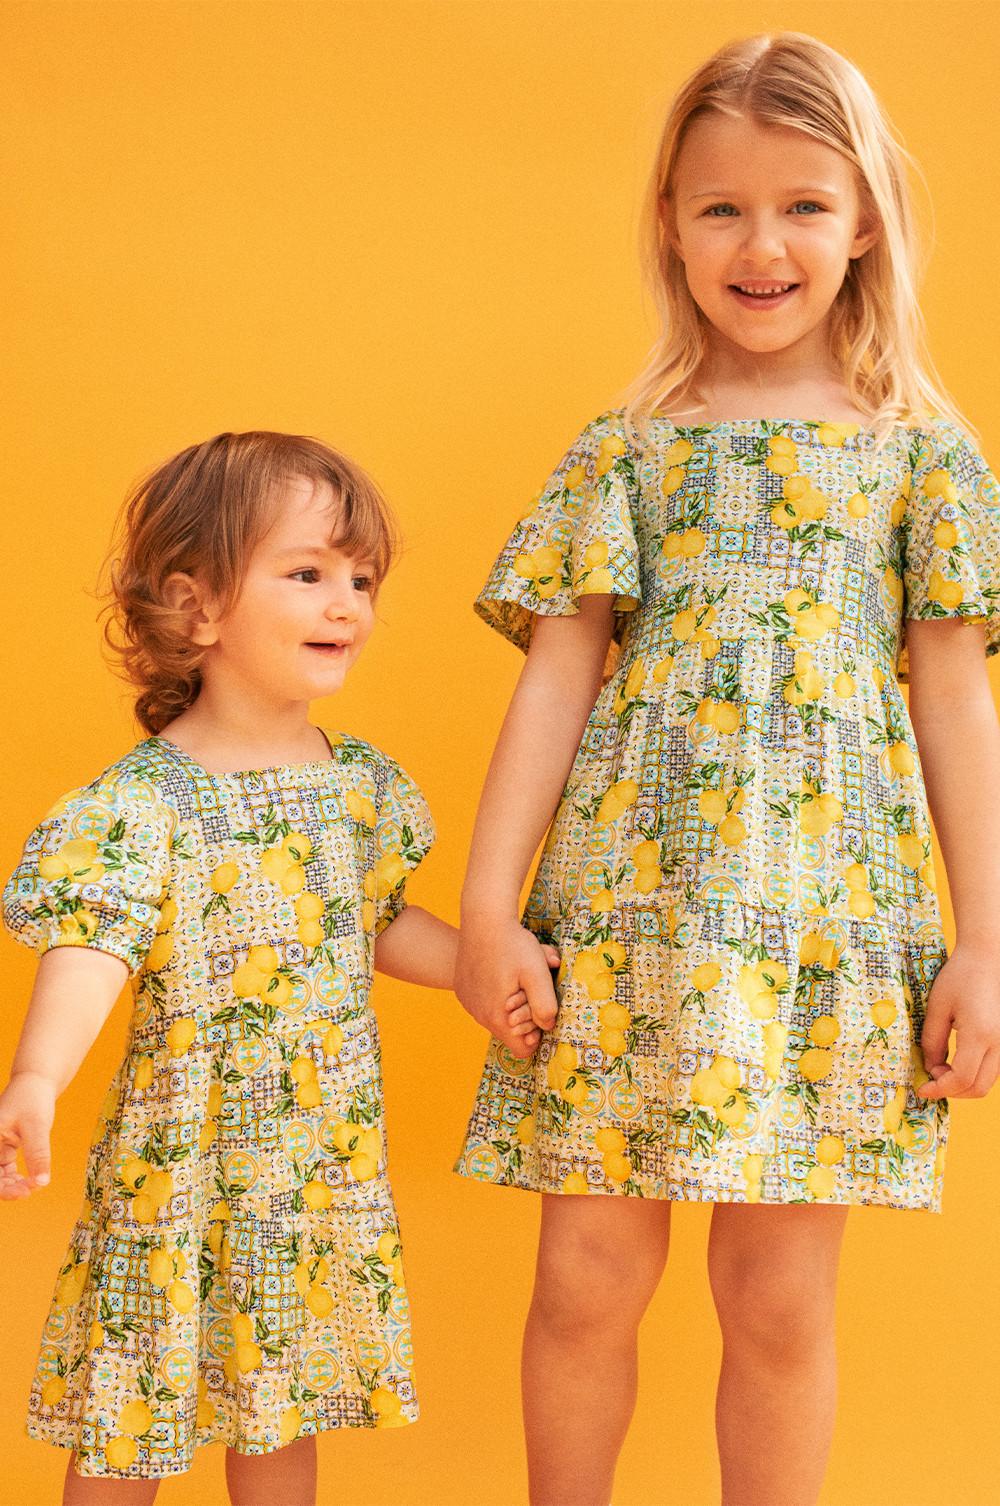 Kinder tragen Kleider mit farblich aufeinander abgestimmtem Zitronen-Print